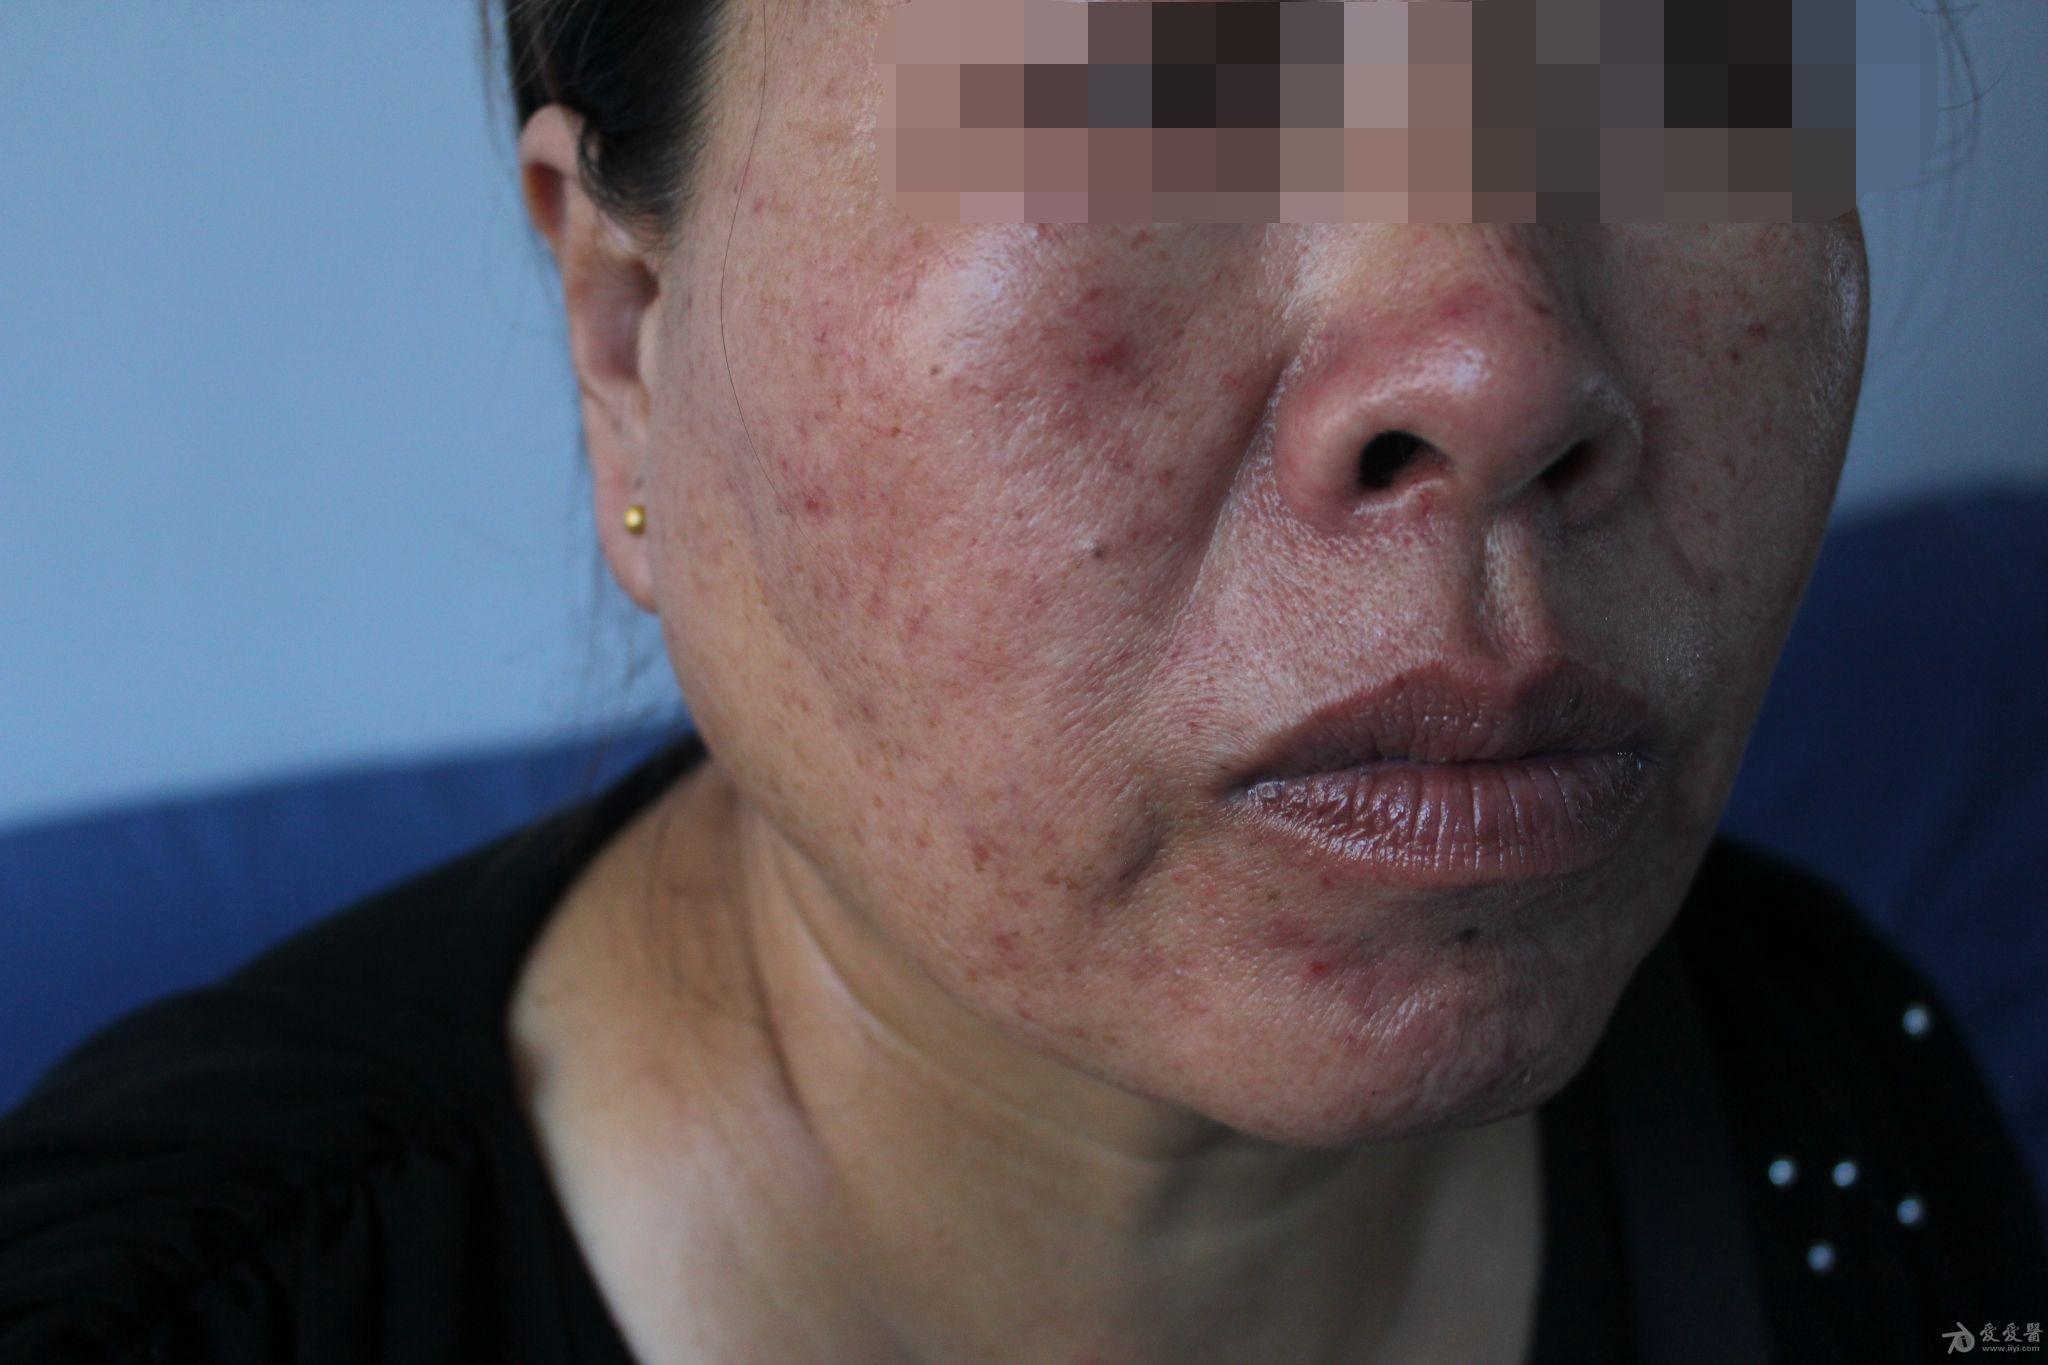 刘某女55岁面颊部突然起大量疱疹